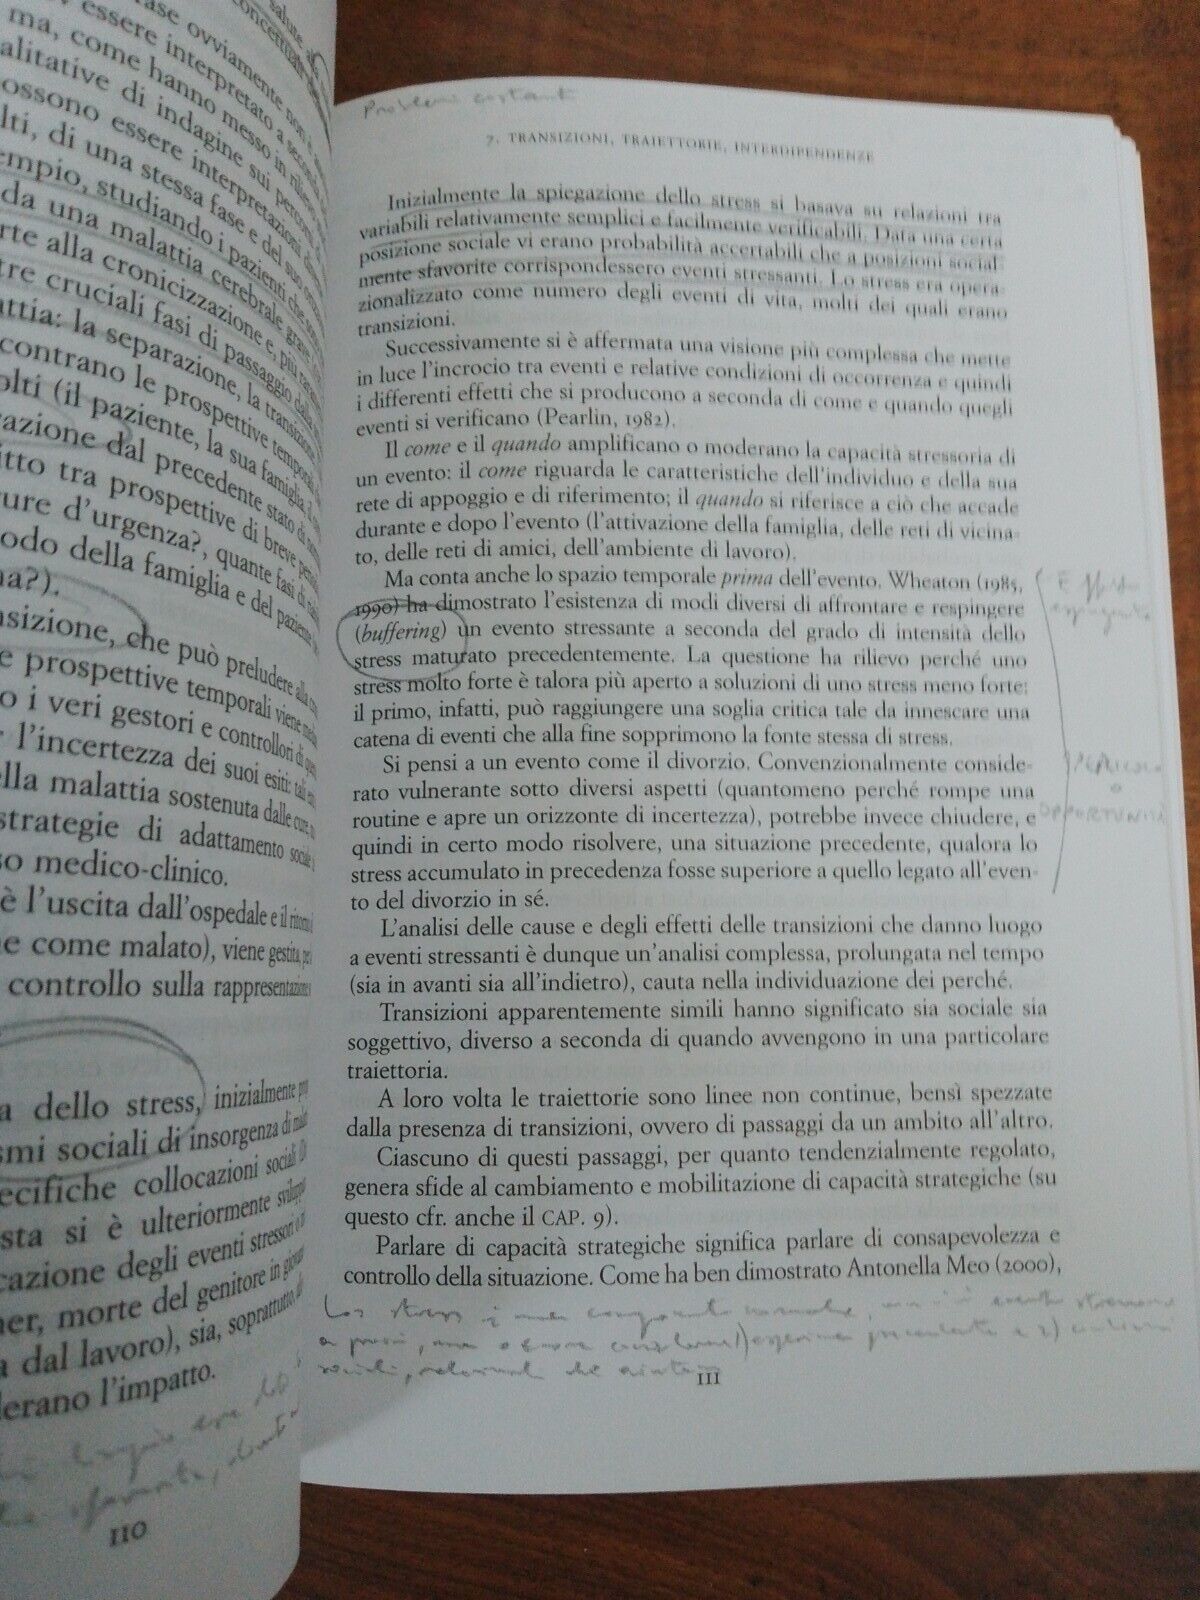 Vite nel tempo. La ricerca biografica in sociologia, M.Olagnero, Carocci 2004